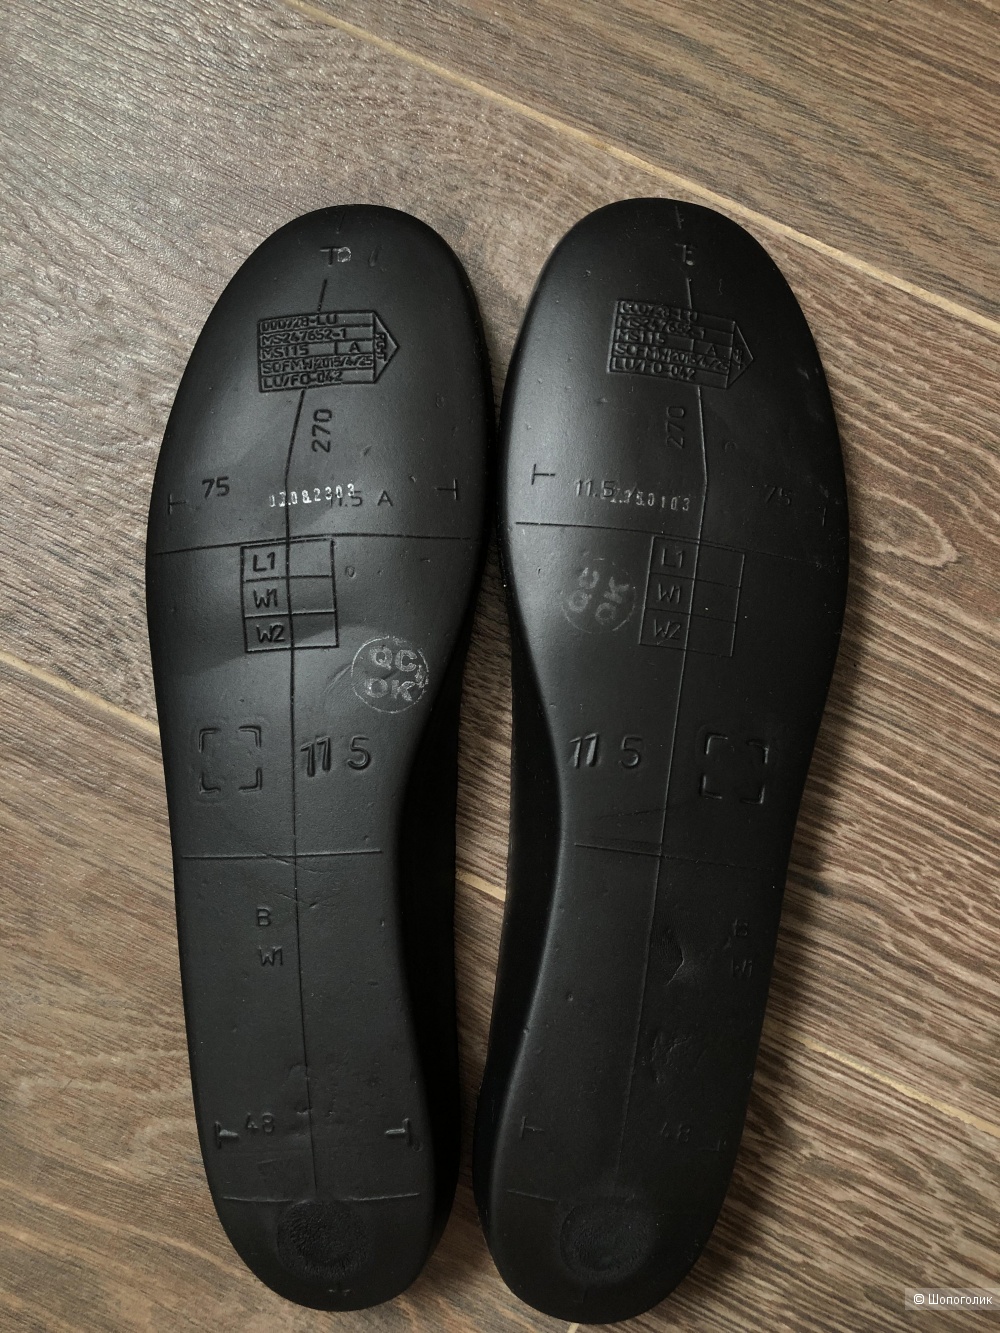 Мужские кроссовки NIKE COURT BOROUGH MID WINTER, размер 44.5 / 11.5 US, 29.5см по стельке.